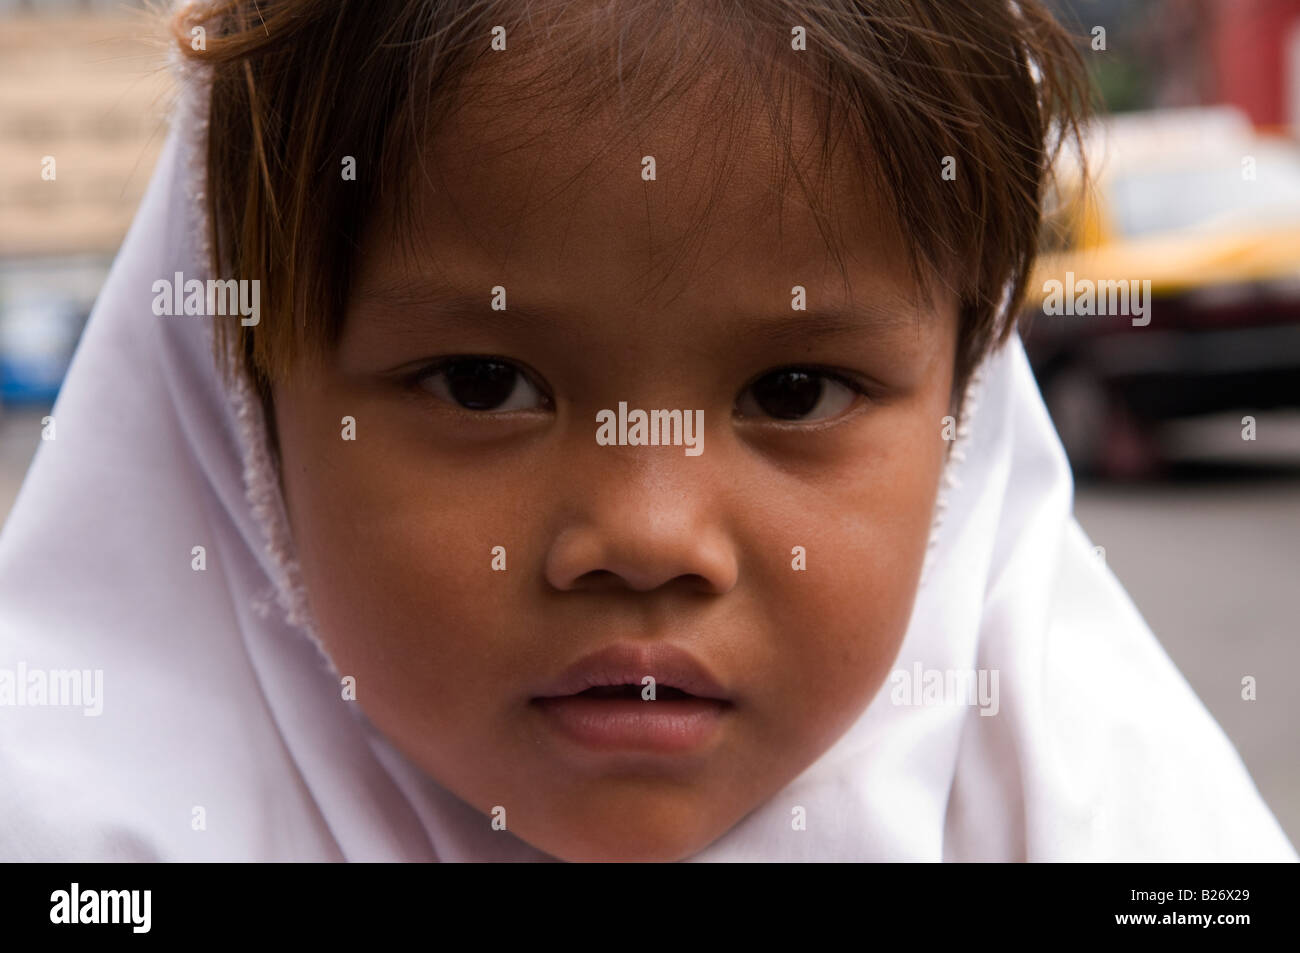 Porträt eines jungen muslimischen Mädchens genommen in Bangkok, Thailand Stockfoto